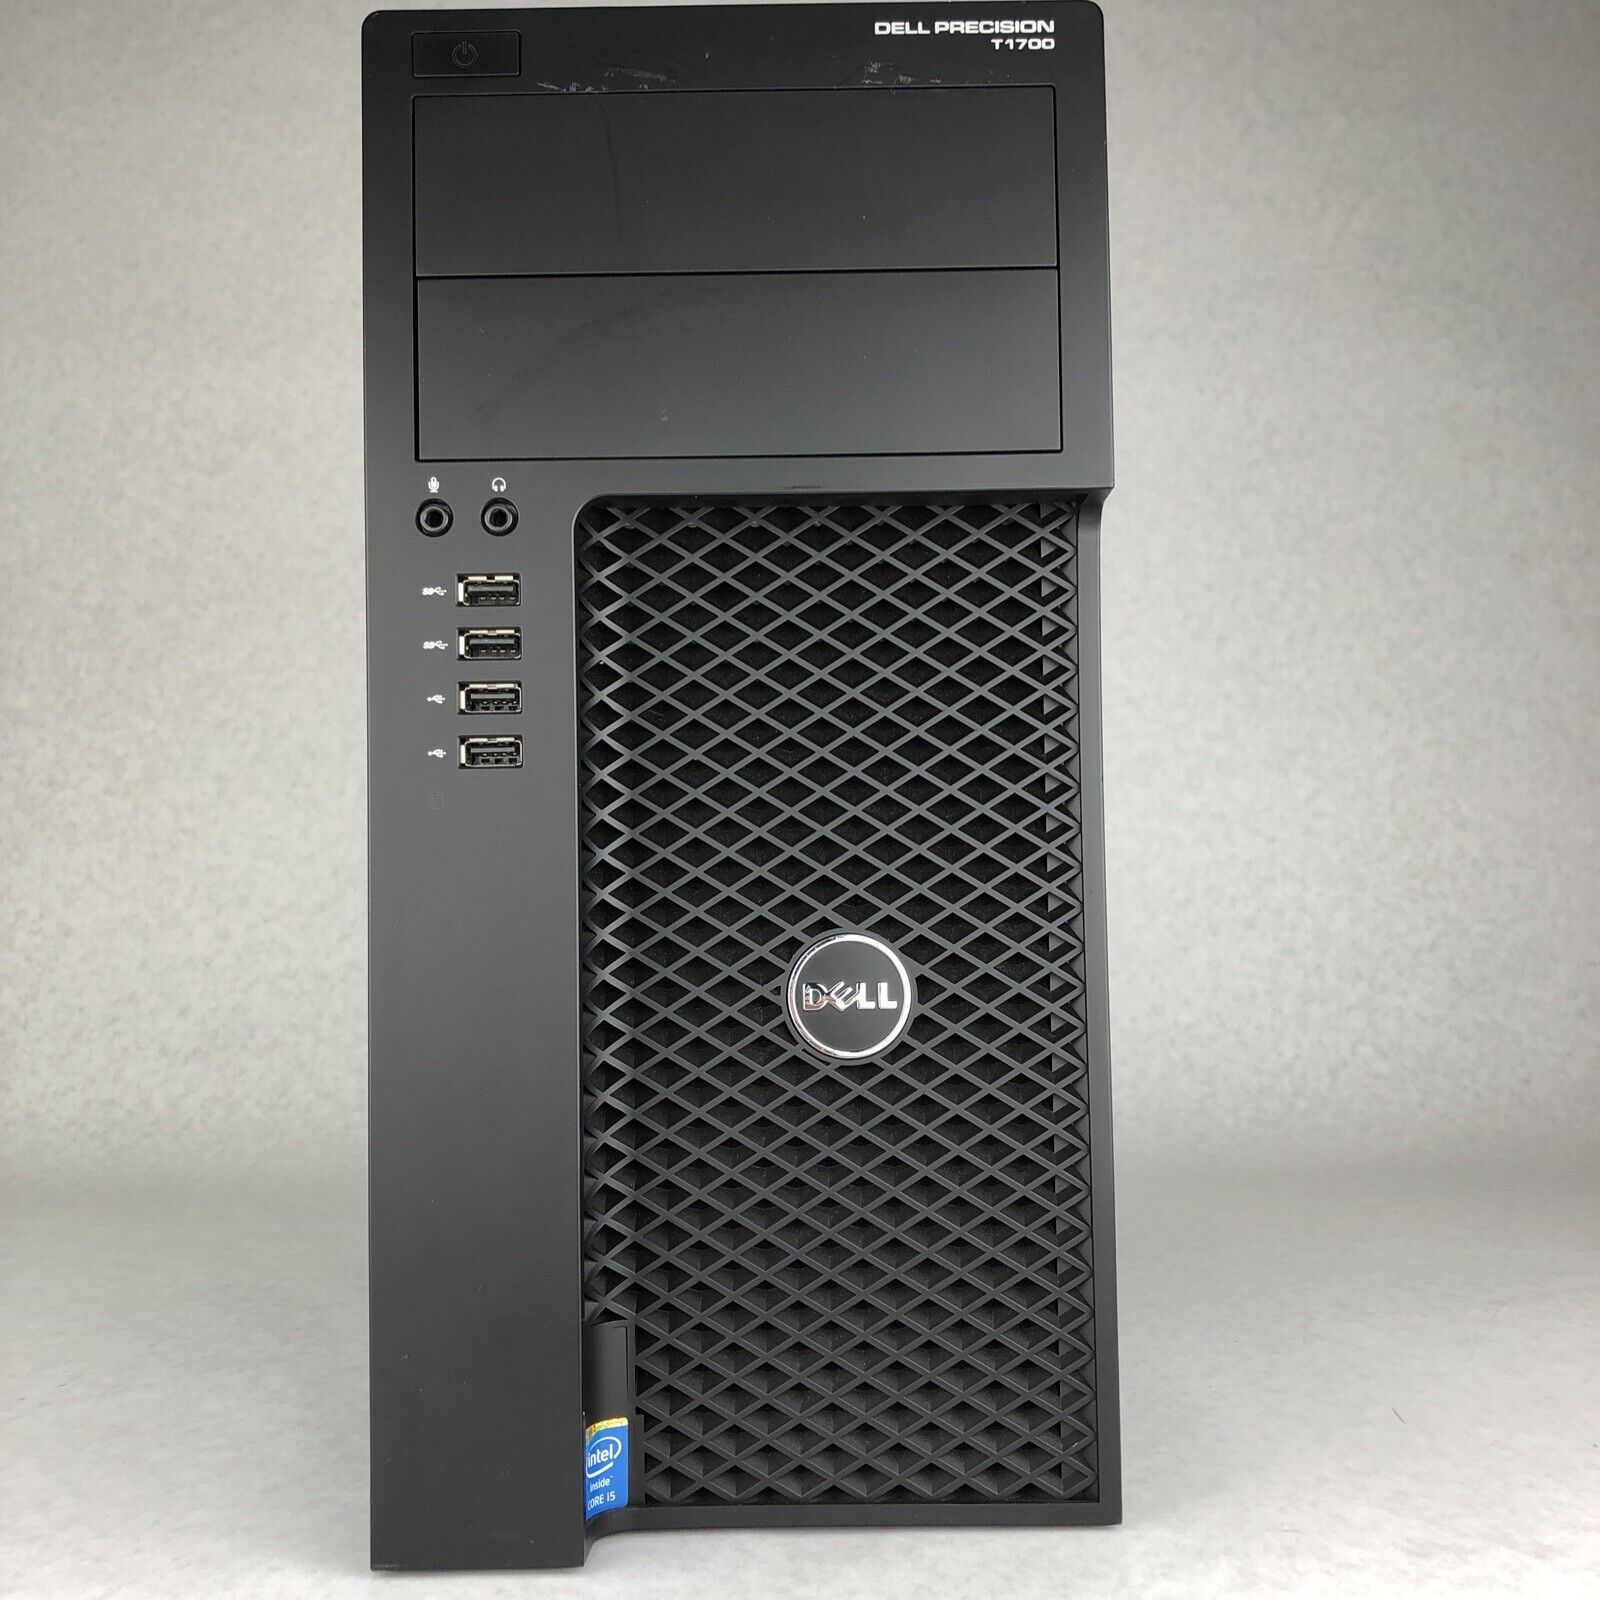 Dell Precision Tower 1700 Quad Core i5-4570 3.20GHz CPU 8GB RAM No HDD No OS